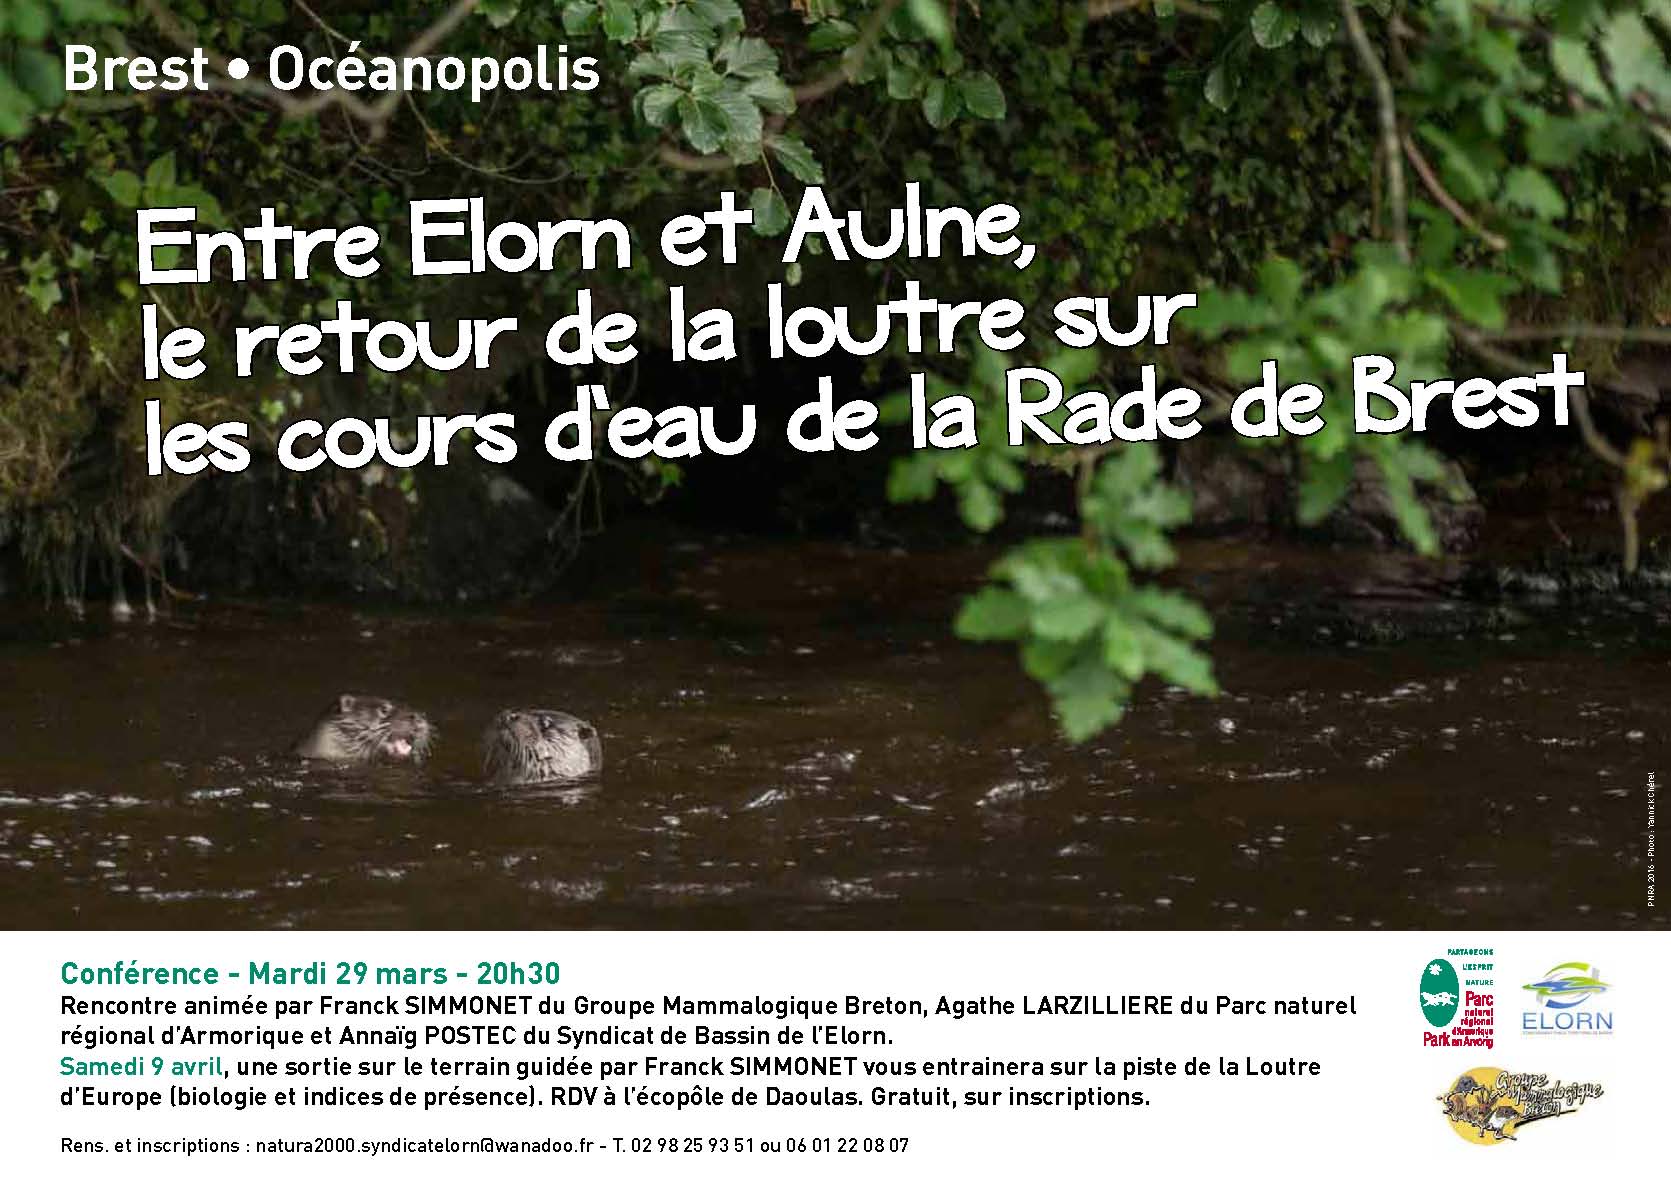 Conférence « Entre Elorn et Aulne, le retour de la Loutre sur les cours d’eau de la rade de Brest »